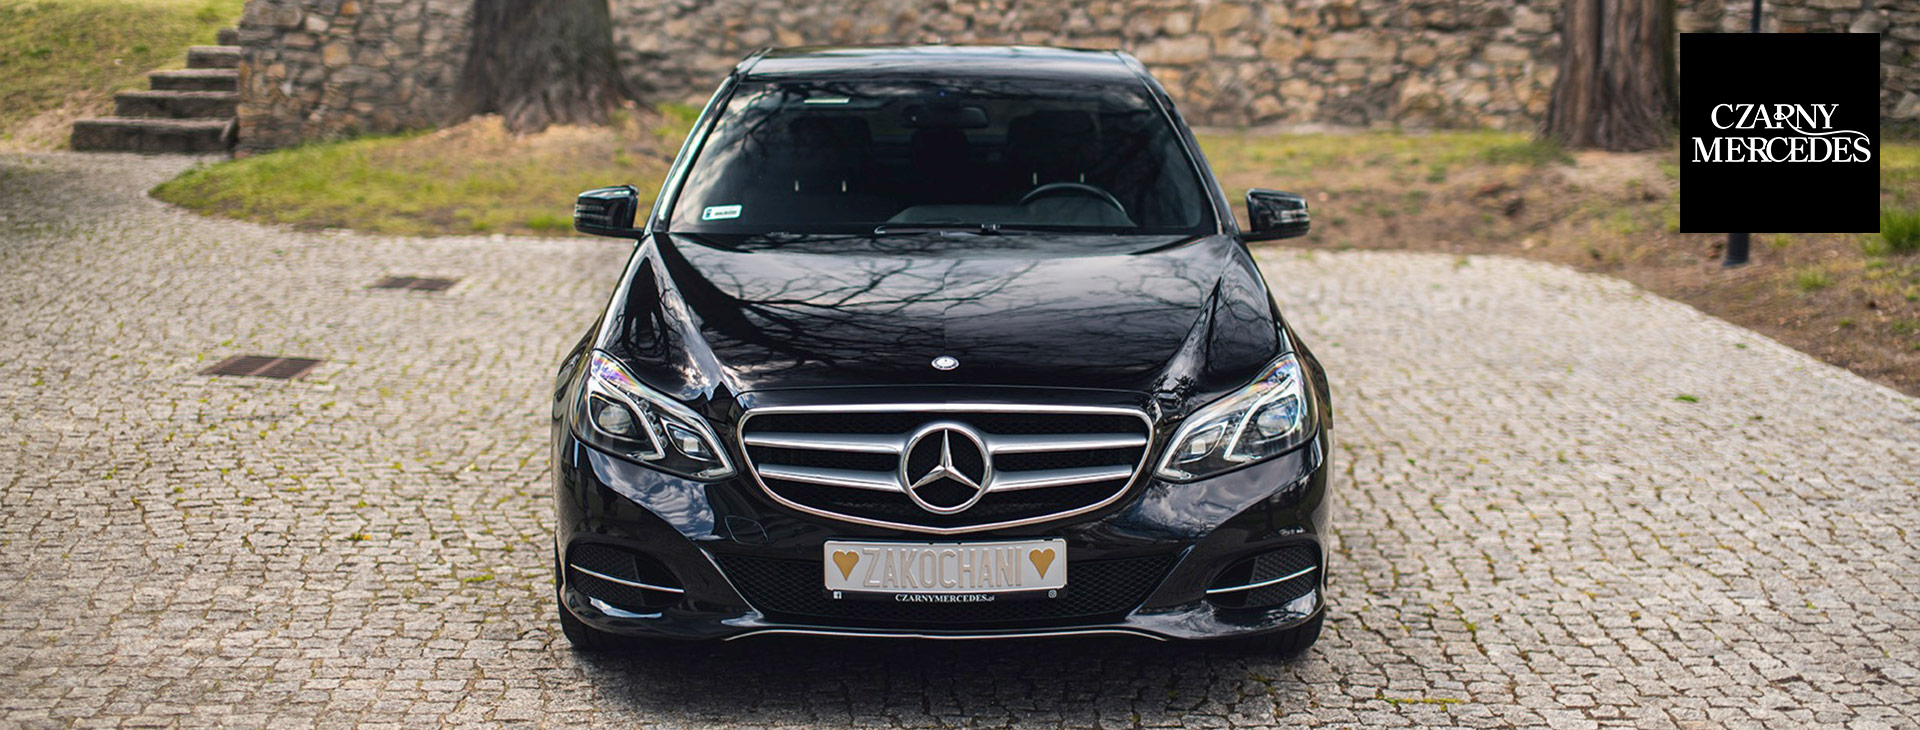 🥇 Czarny Mercedes Luksusowe i nowoczesne auto do ślubu